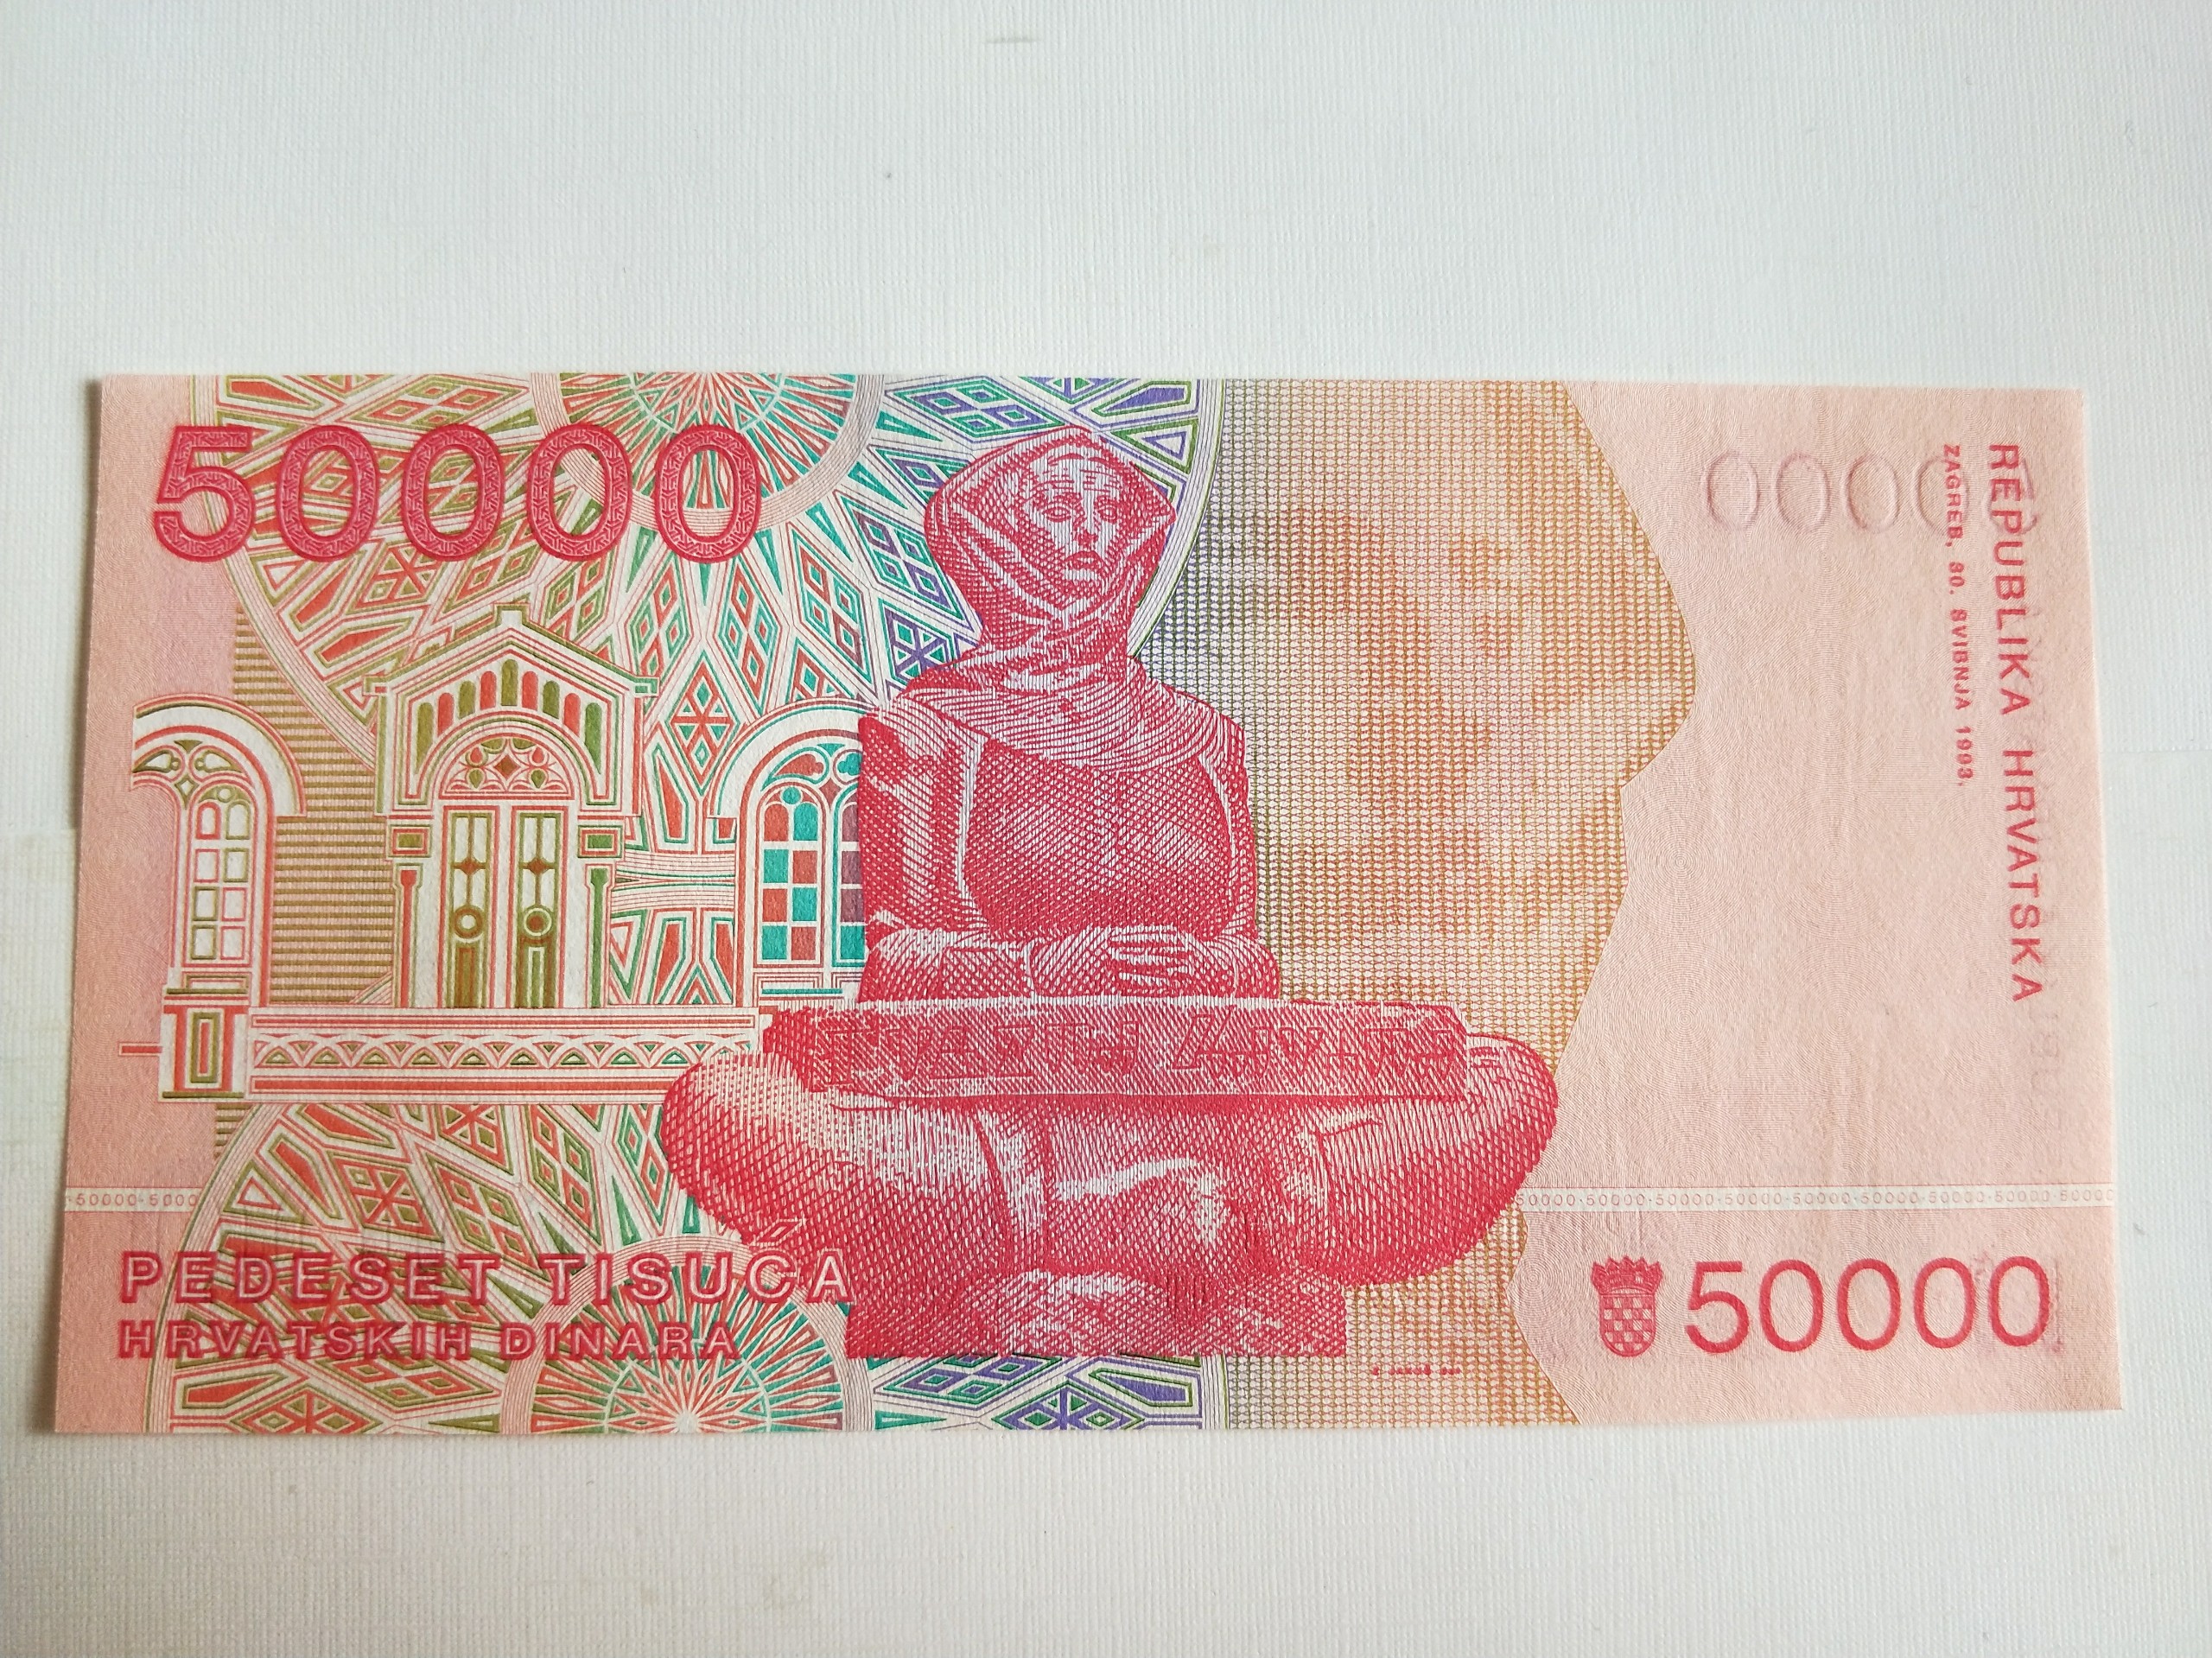 克罗地亚纸币一张如图所示发挂号信不与快递合邮